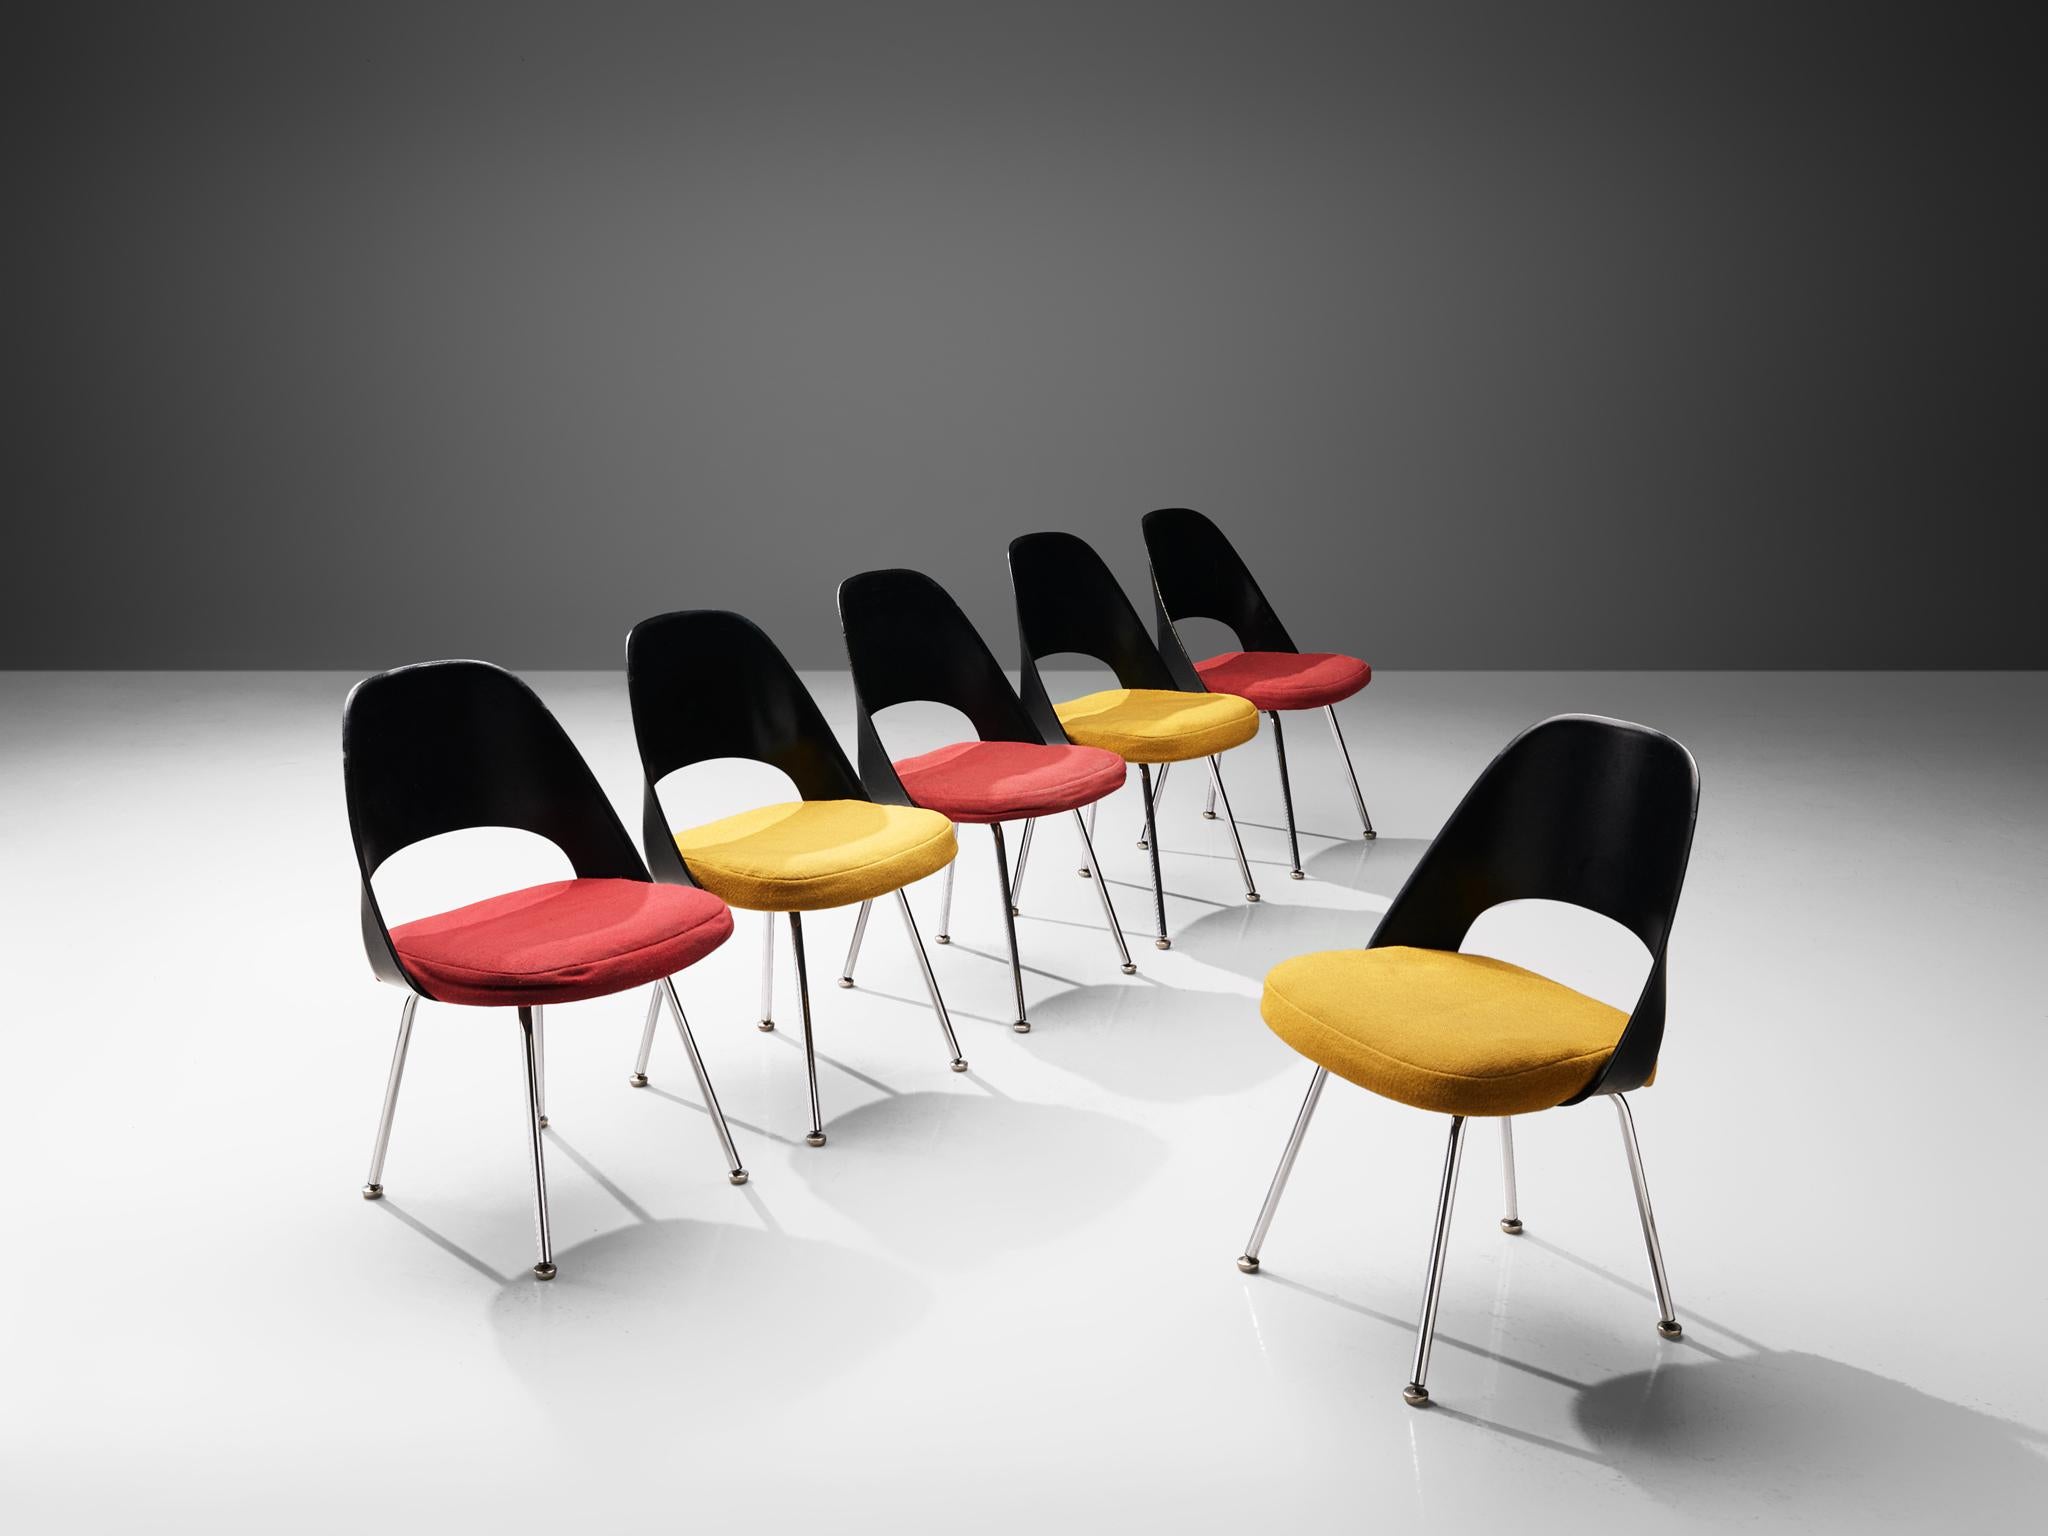 Eero Saarinen pour Knoll International, ensemble de six chaises de salle à manger, modèle '72', acier chromé, fibre de verre, tissu,  États-Unis, design 1948, produit dans les années 1970 

Chaises de salle à manger modèle '72' conçues par Eero